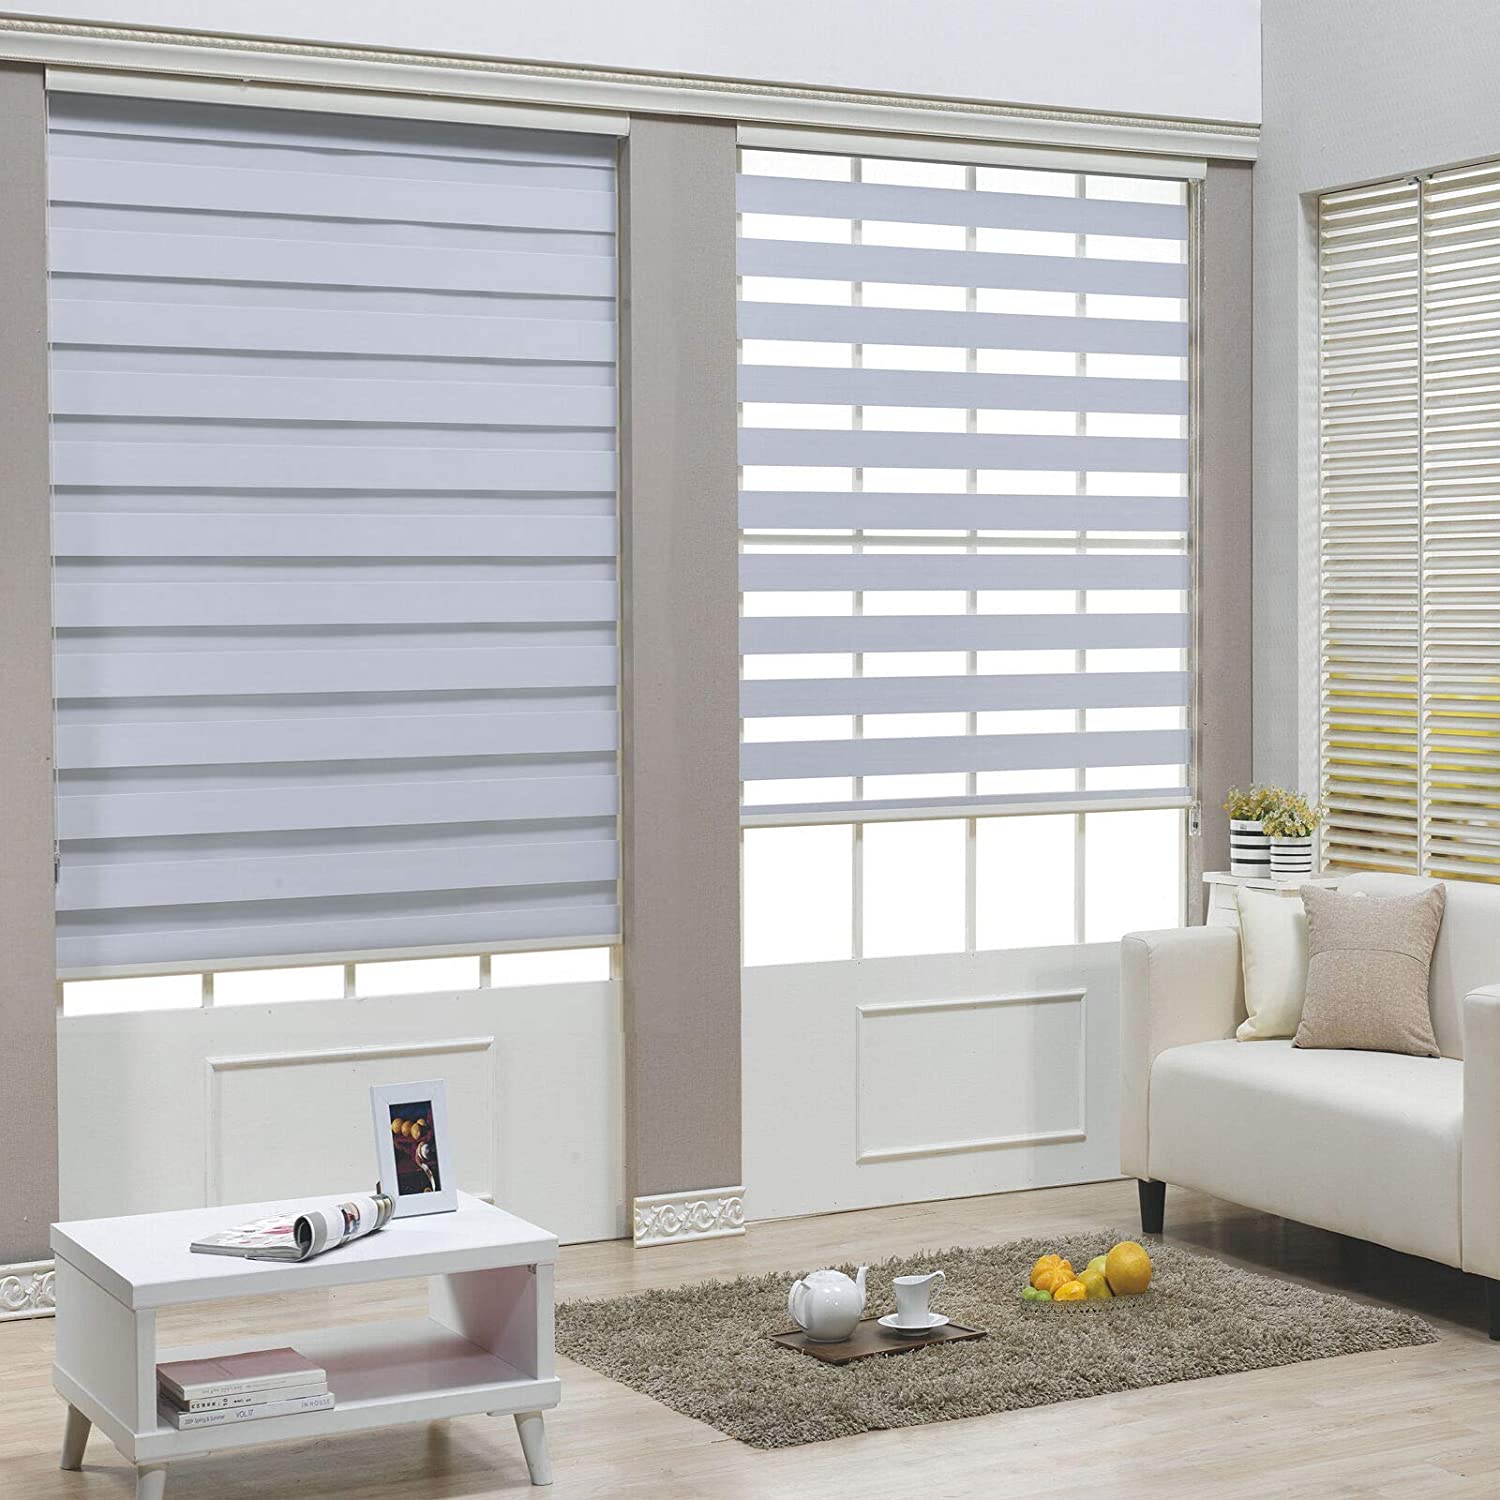 Splendid-Blind-Curtain For-Bedroom-Dubai